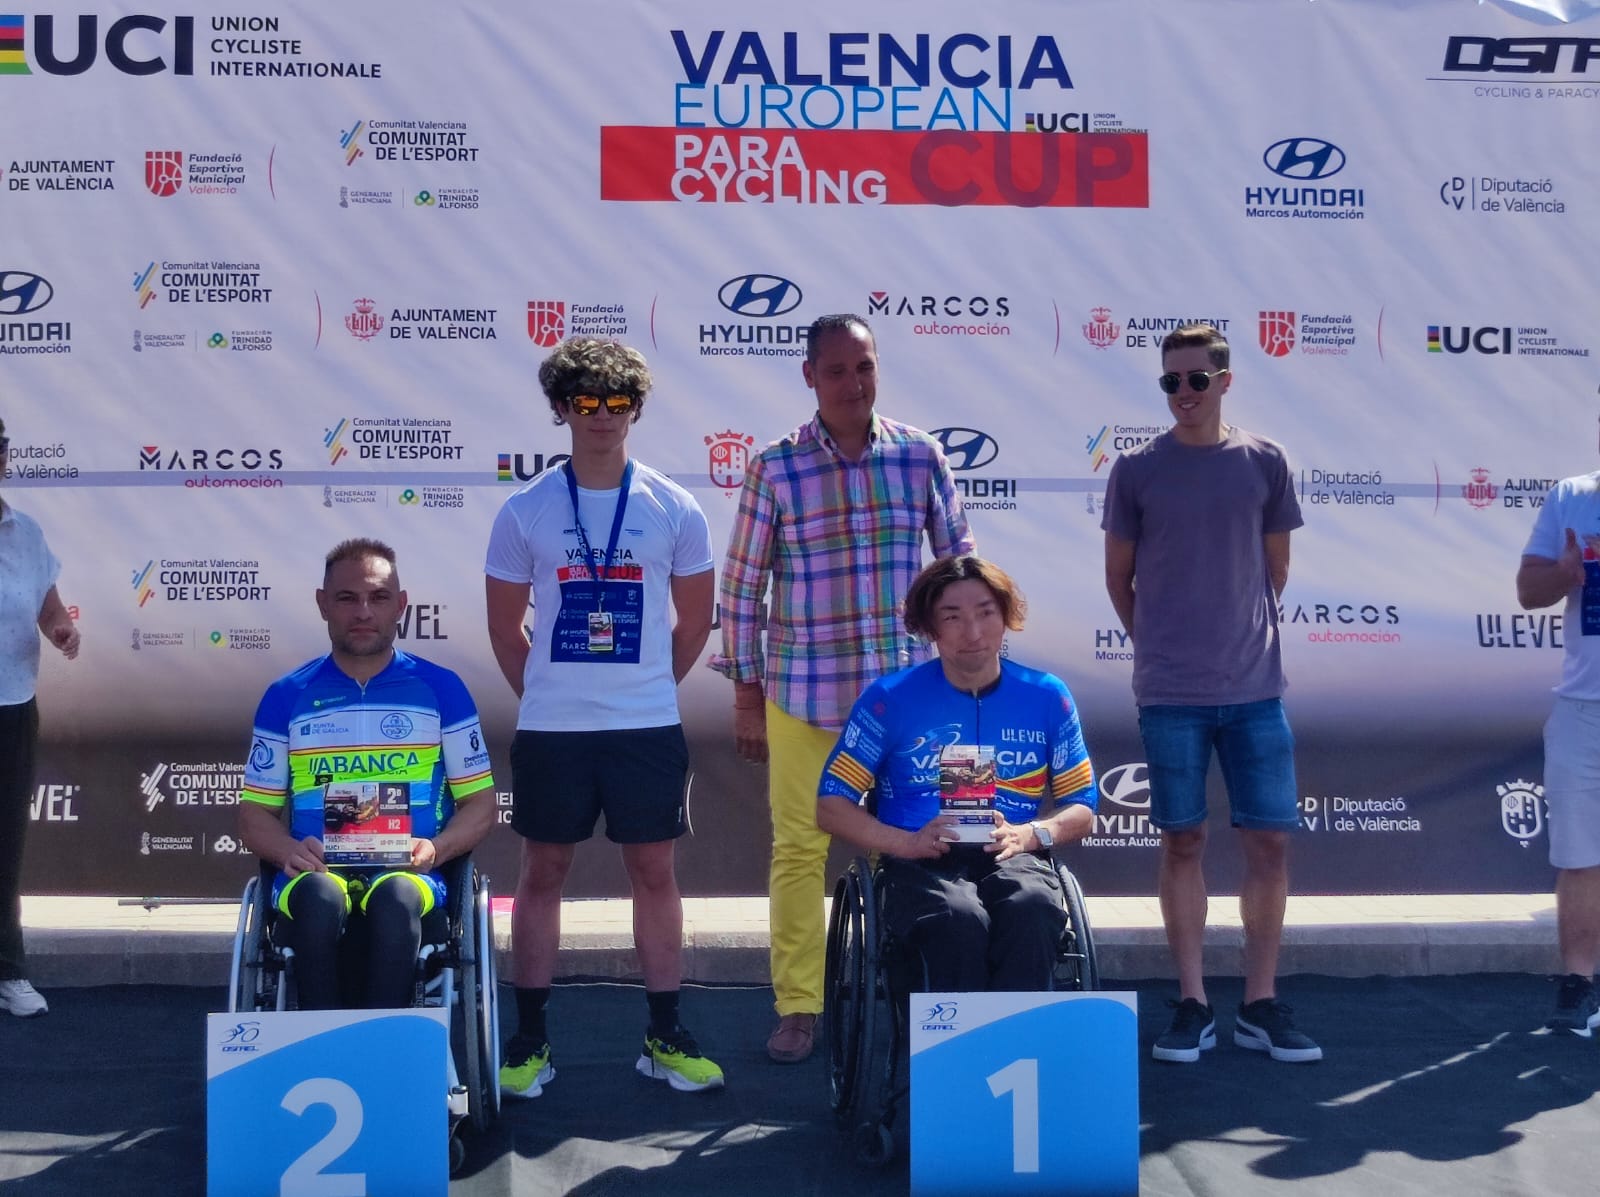 Los madrileños cierran la temporada con grandes resultados en la Valencia European Paracycling Cup